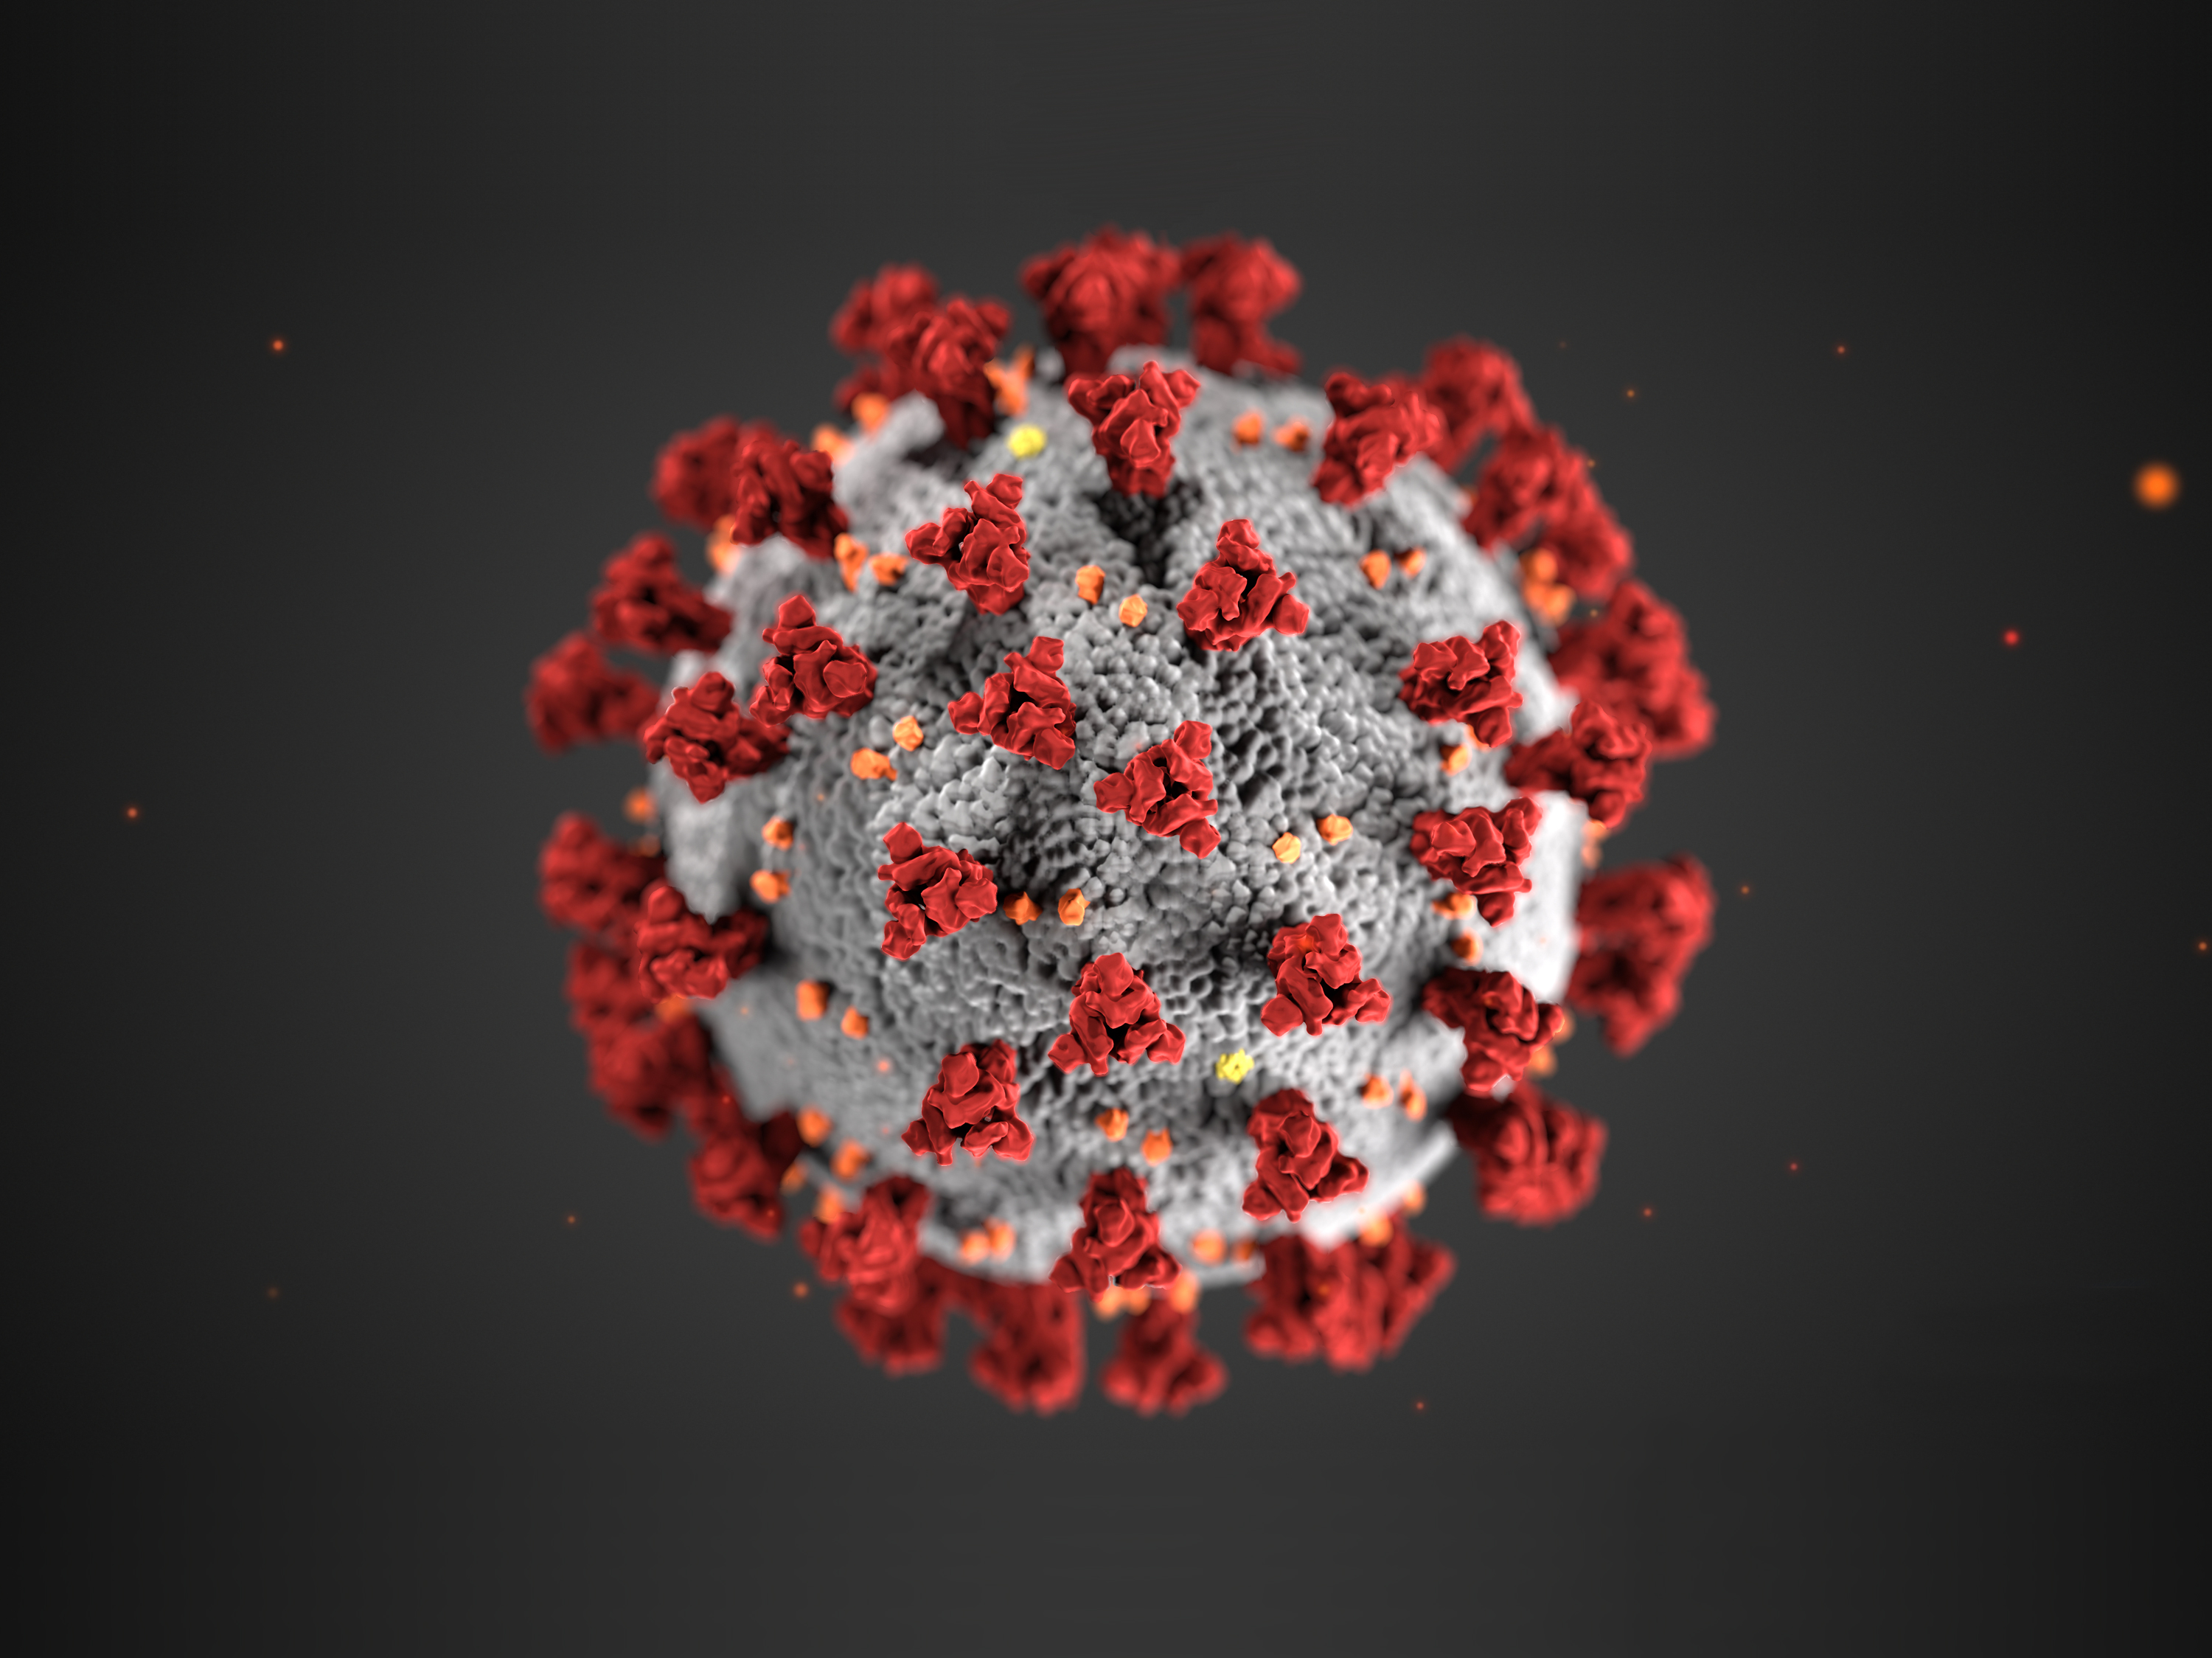 microscopic image of the coronavirus